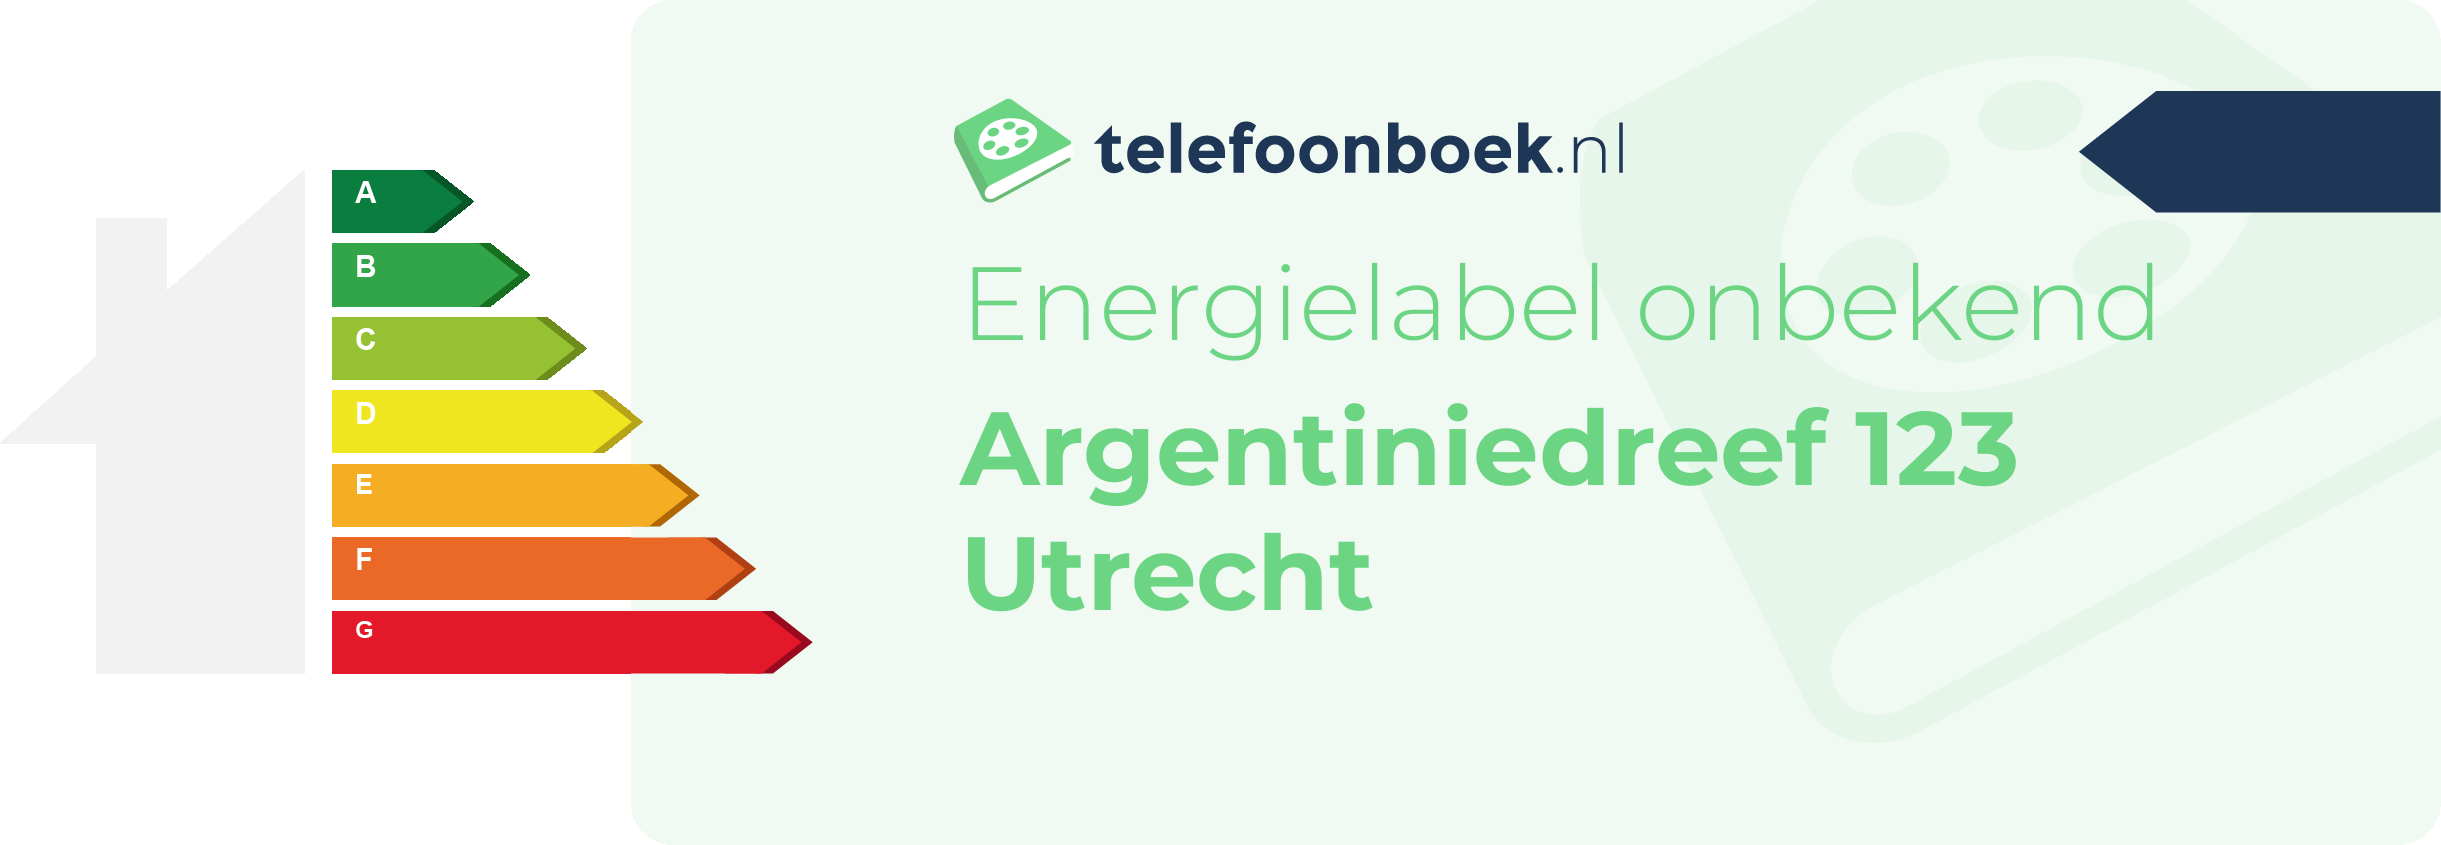 Energielabel Argentiniedreef 123 Utrecht